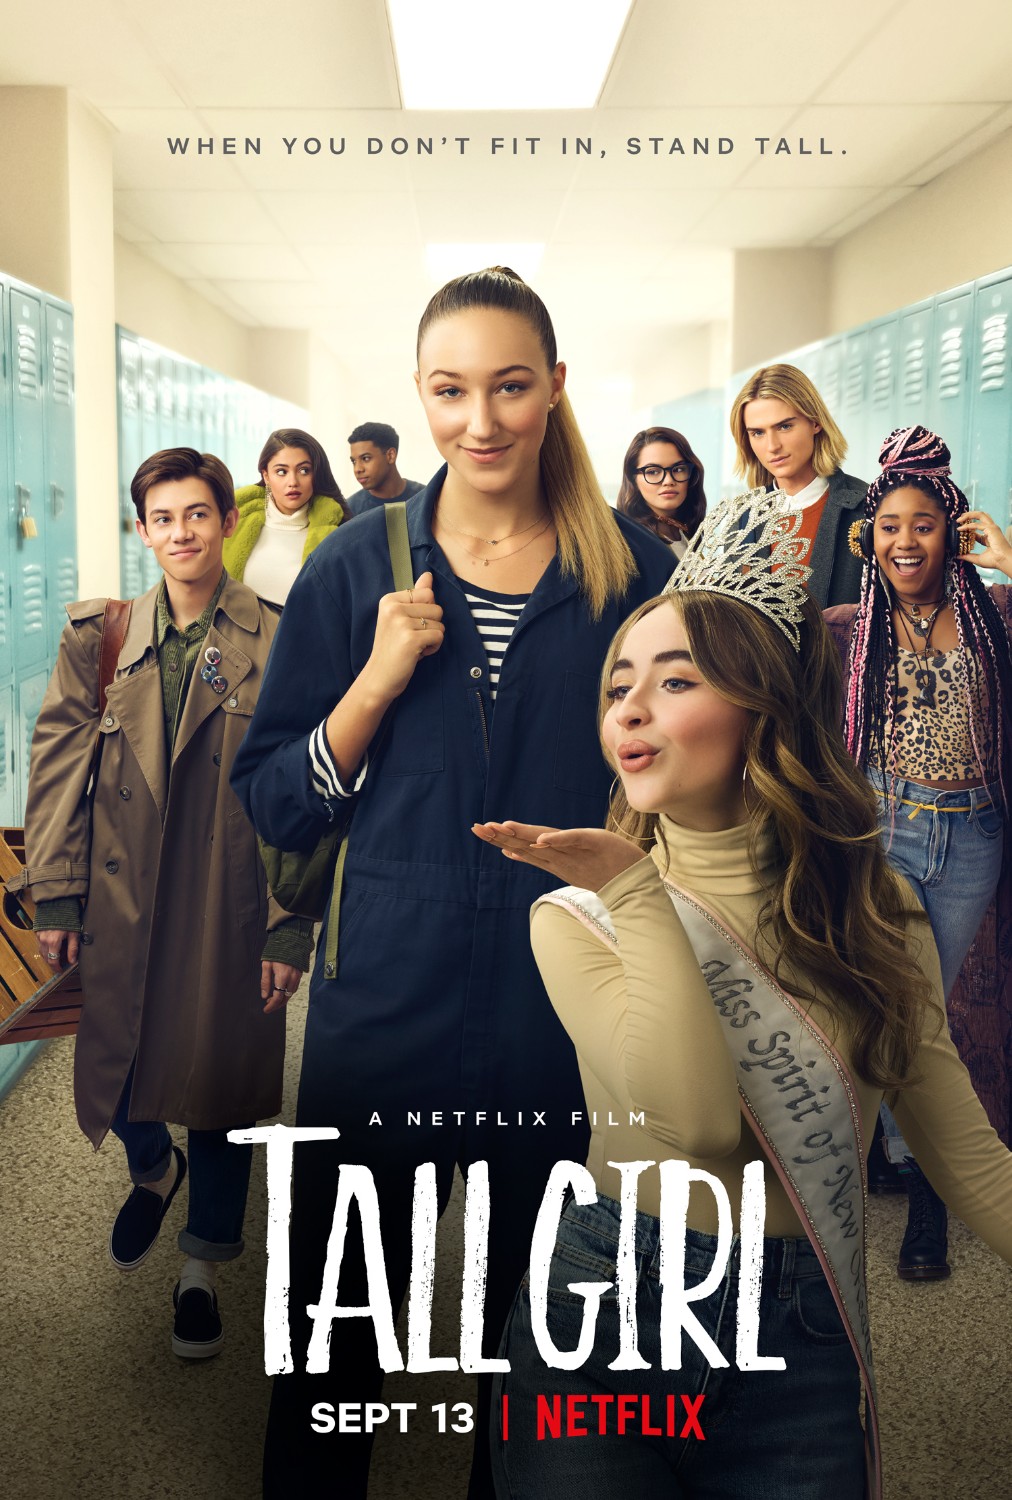 ดูหนังออนไลน์ Tall Girl – Netflix (2019) รักยุ่งของสาวโย่ง